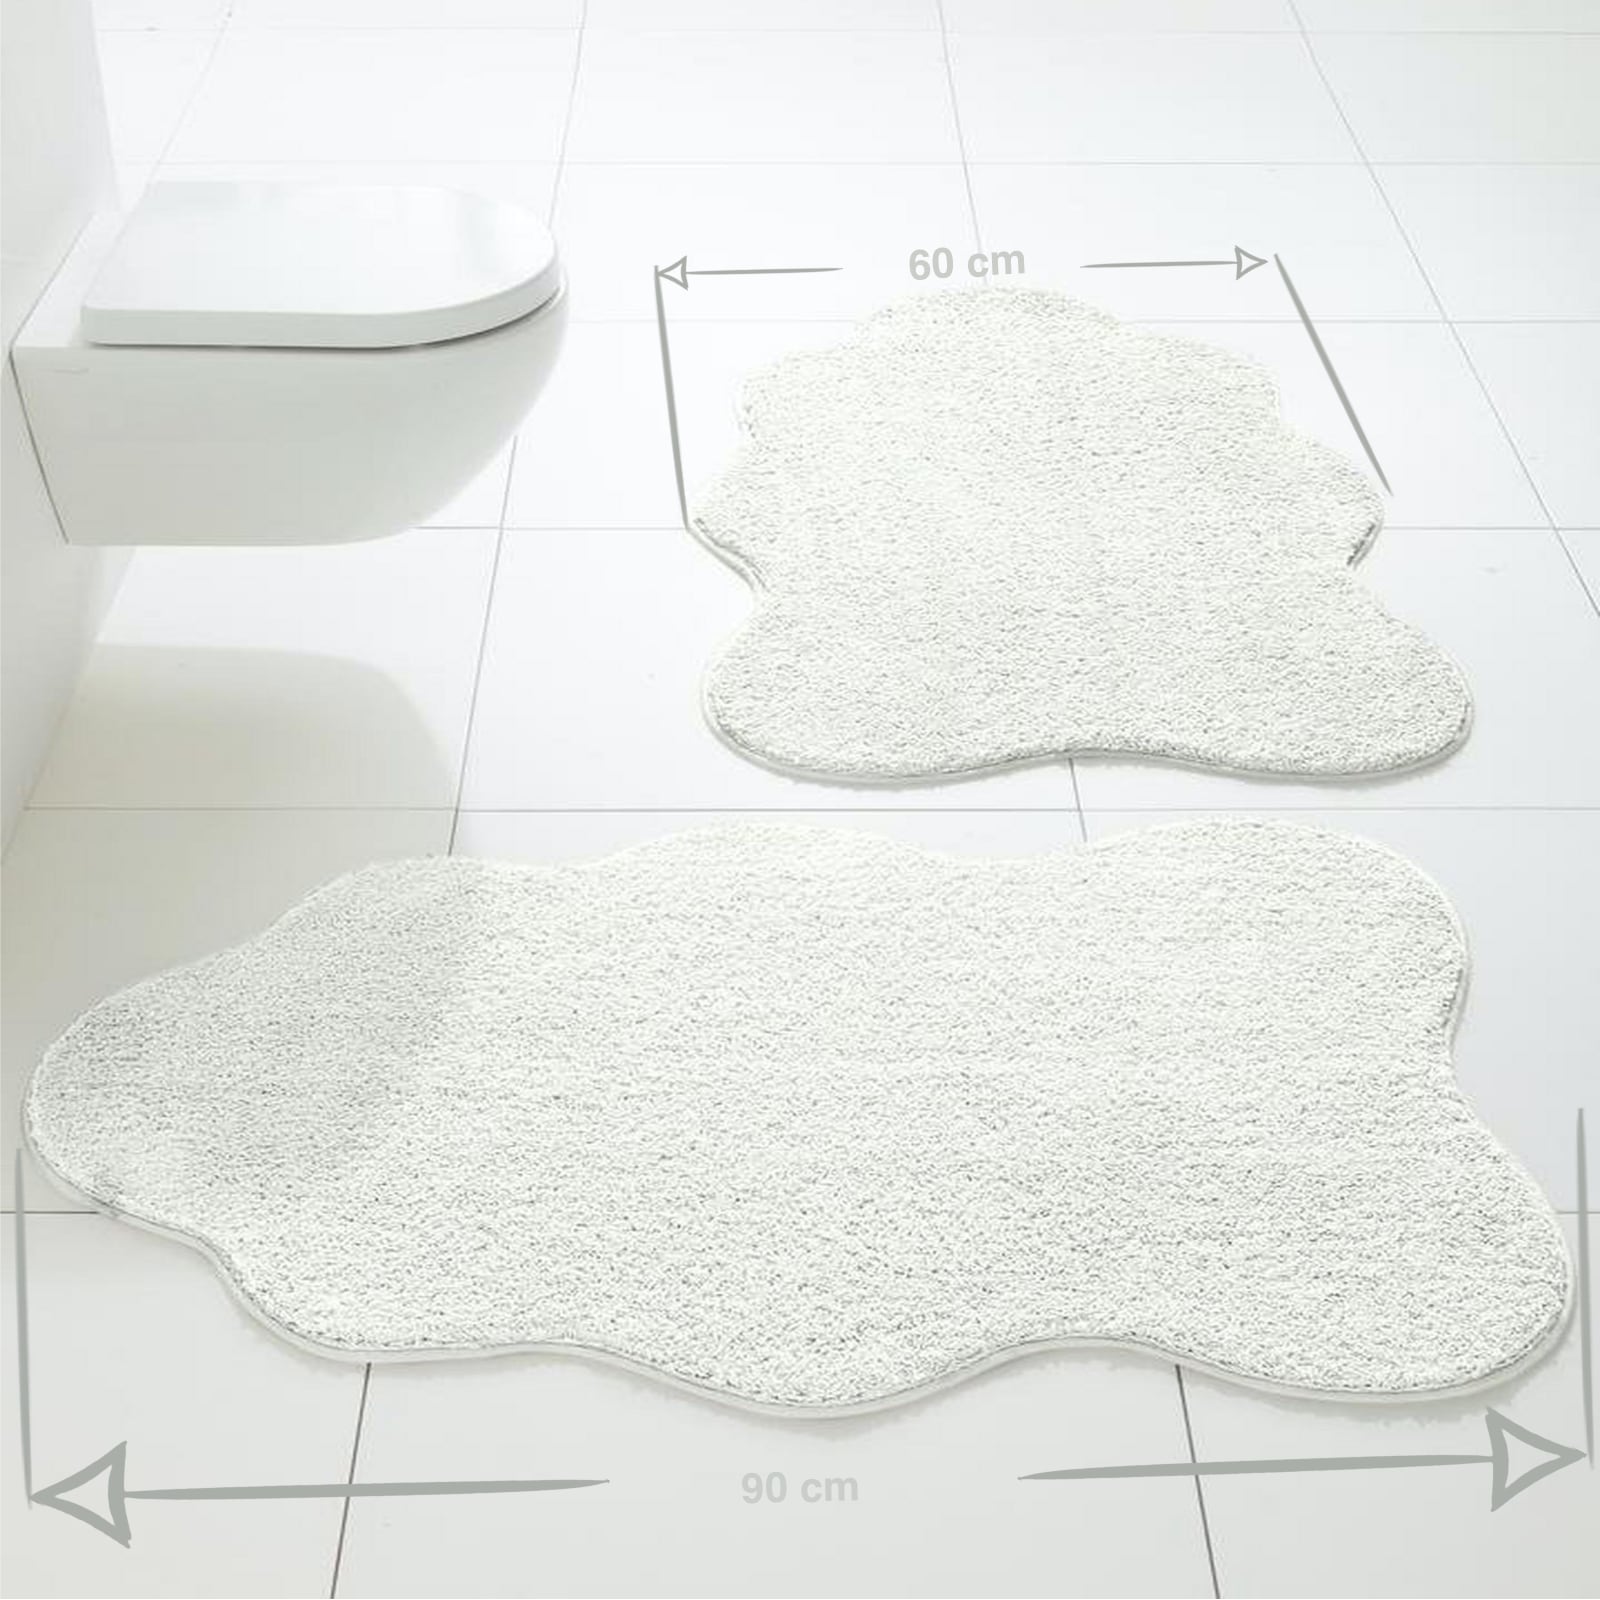 Flauschglanz Fell-Form Badematte – Multifunktionaler WC-Vorleger & Duschvorleger